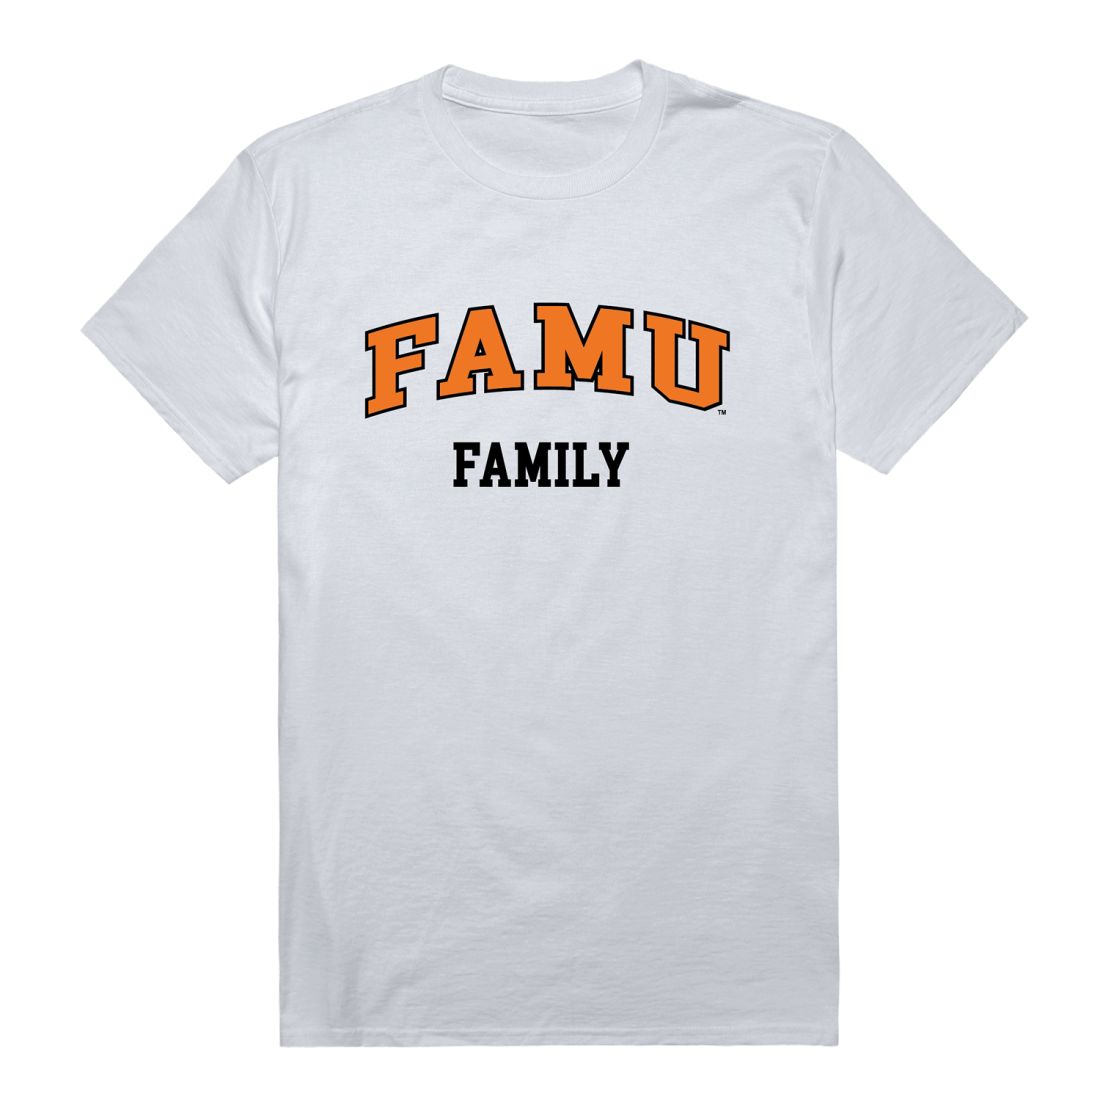 FAMU Florida A&M University Rattlers Family T-Shirt